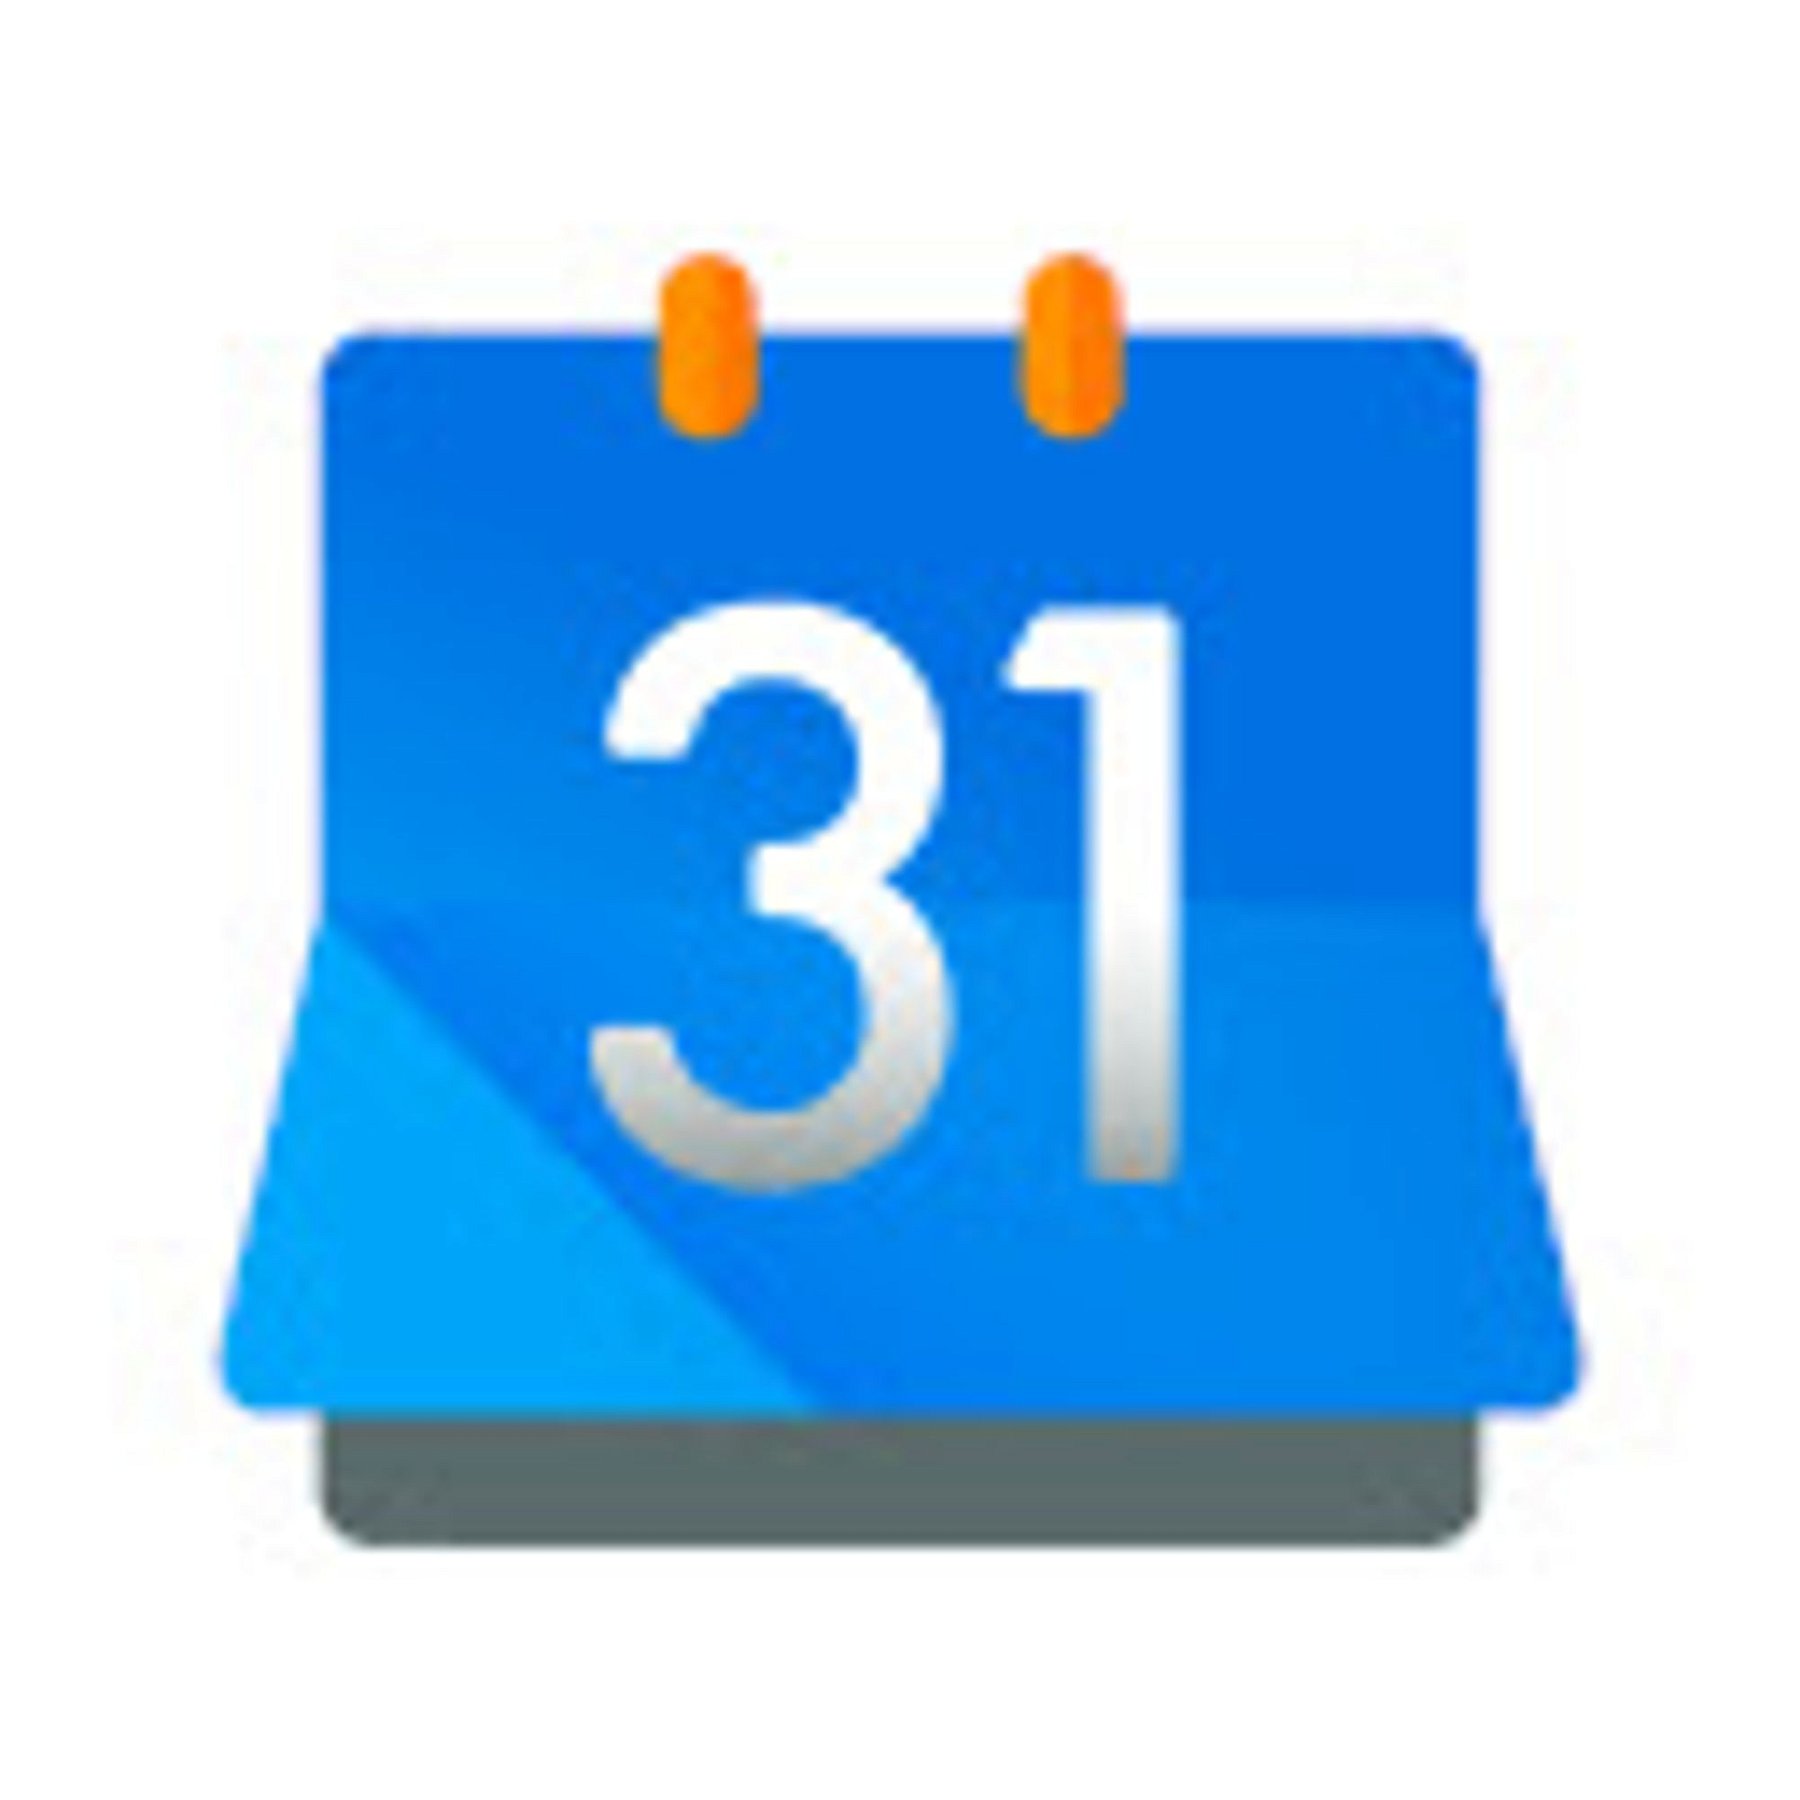 Button for Google Calendar™